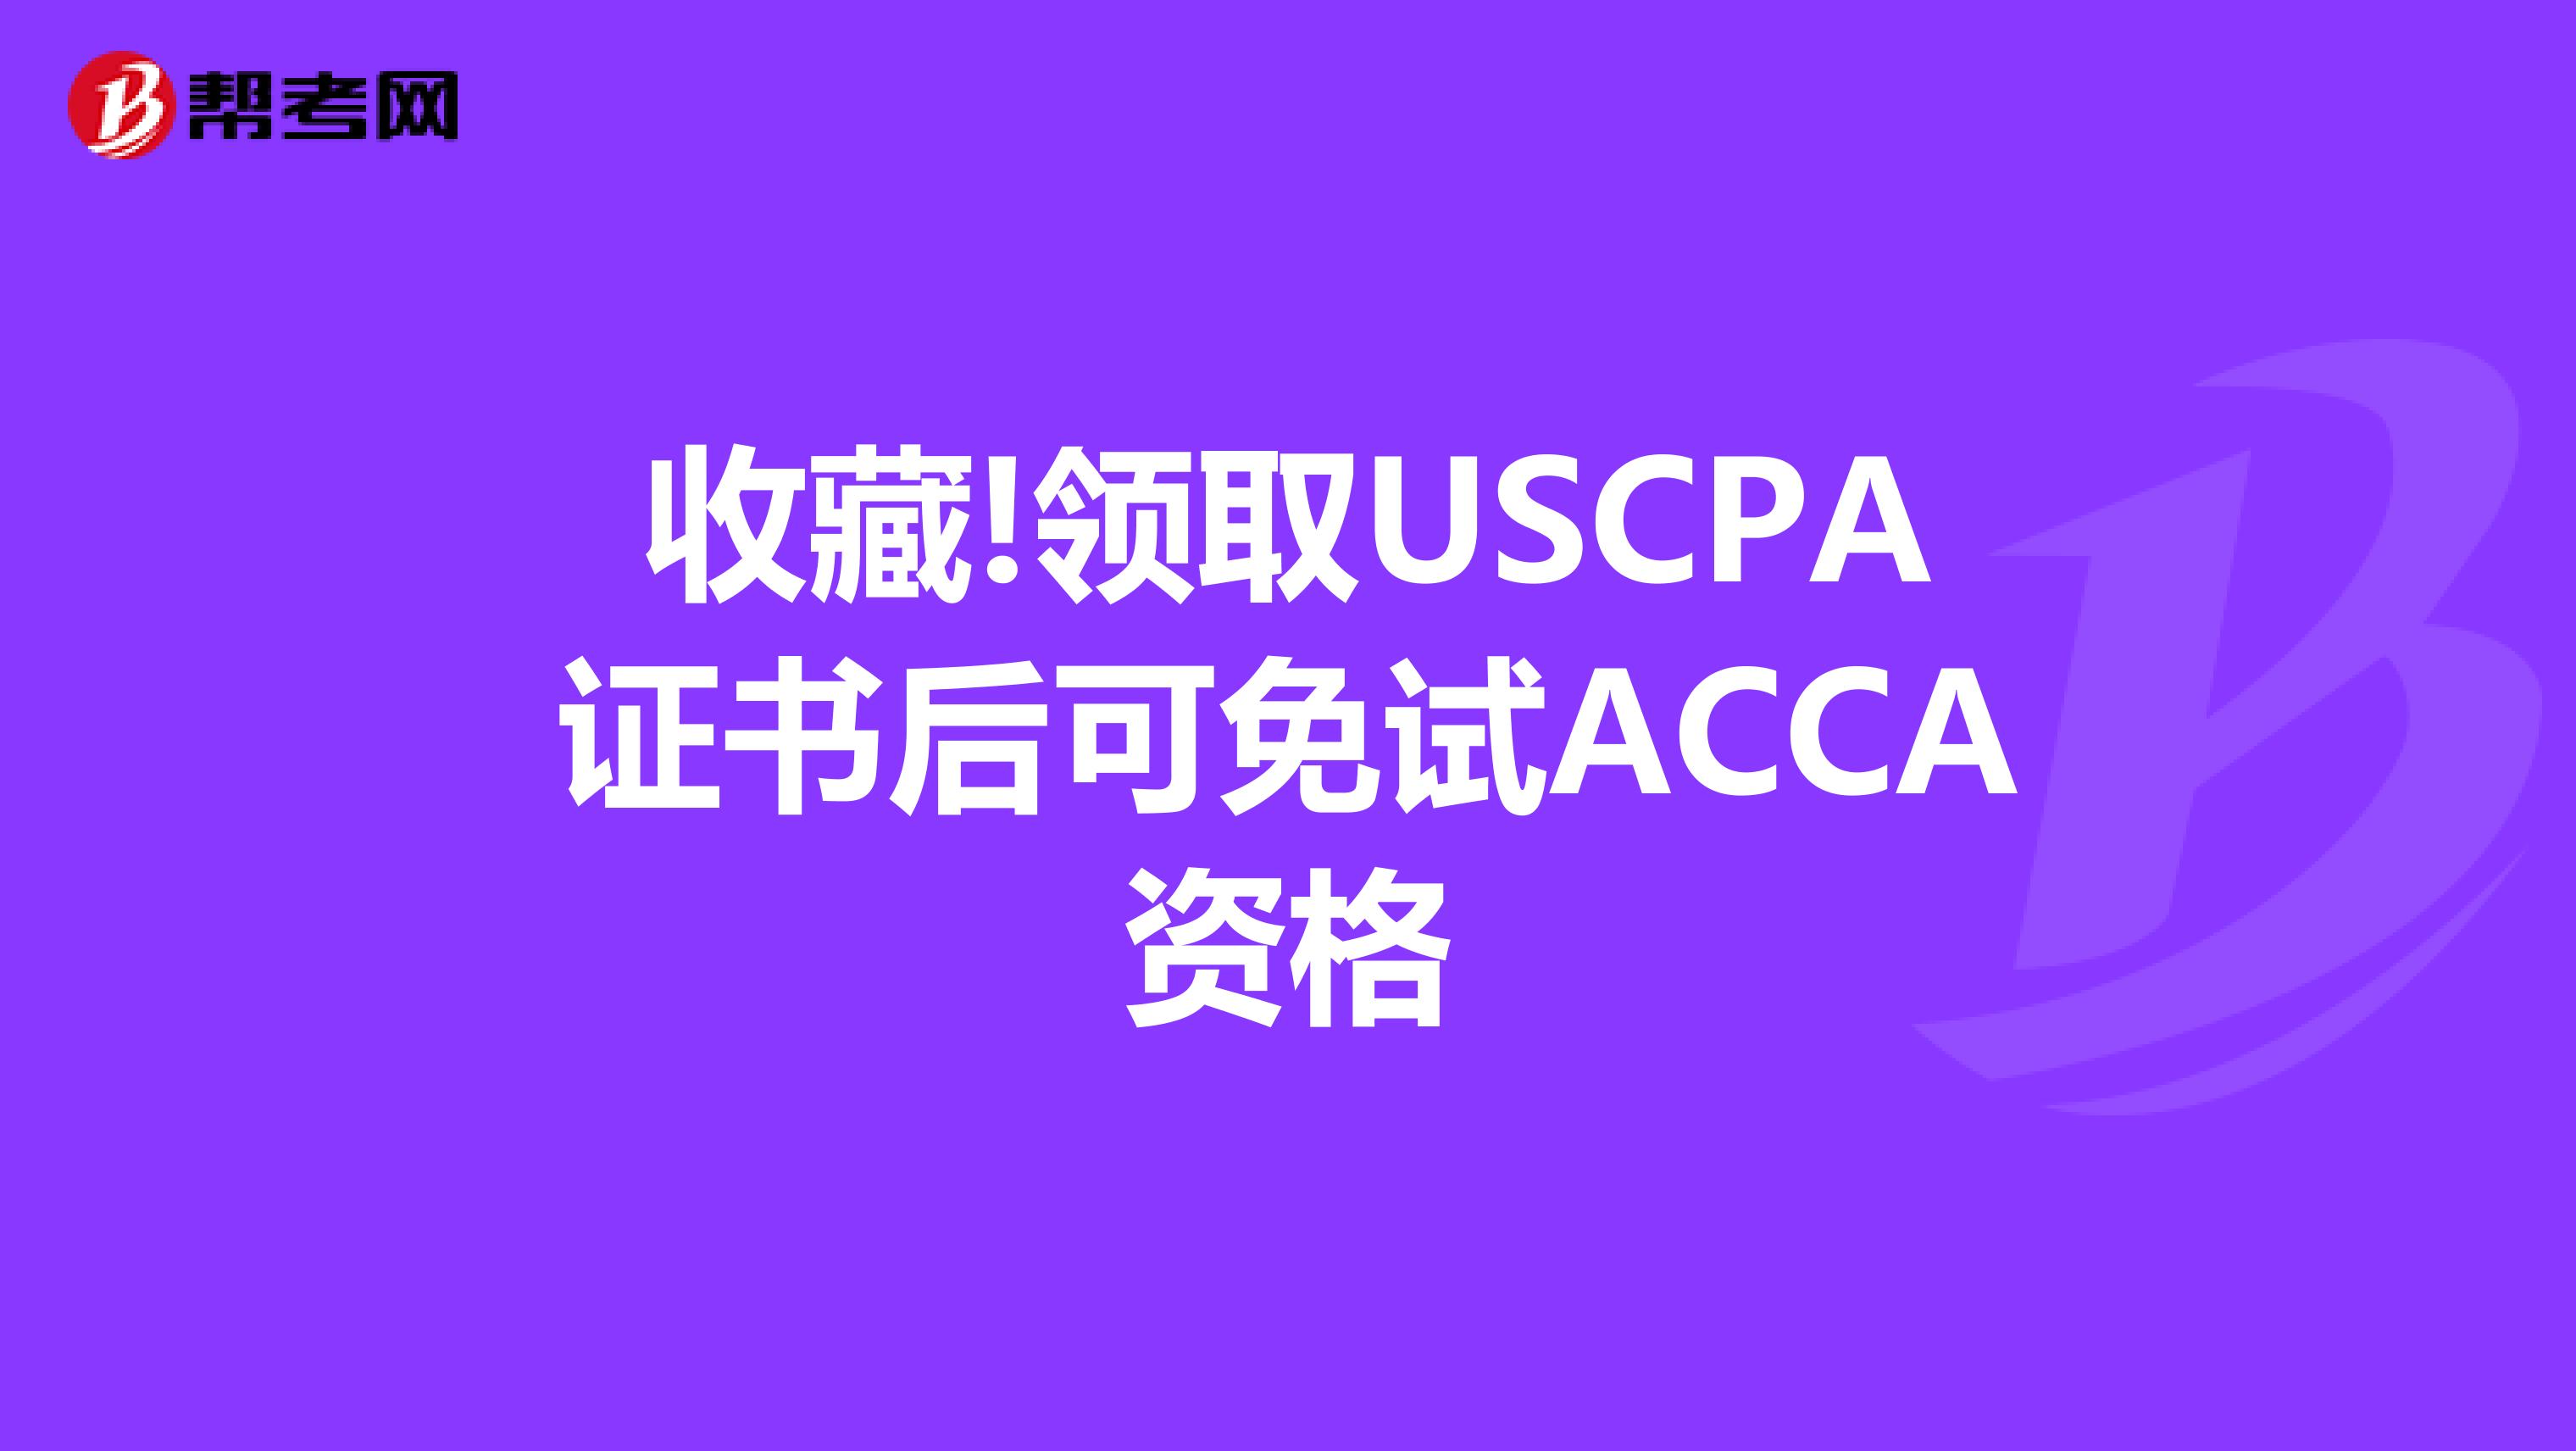 收藏!领取USCPA证书后可免试ACCA资格